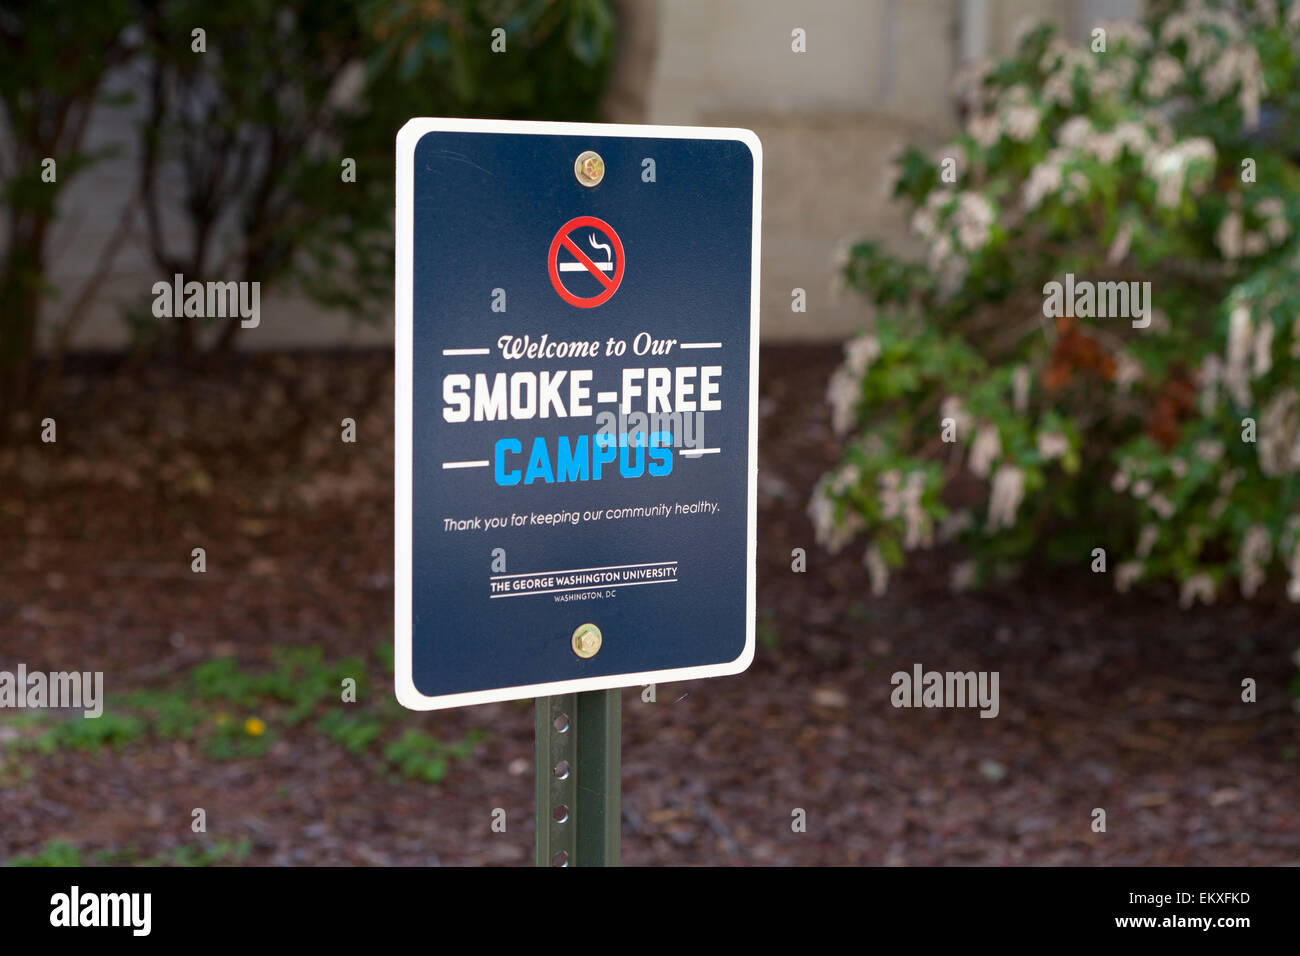 Smoke-free campus sign, George Washington University - Washington, DC USA Stock Photo